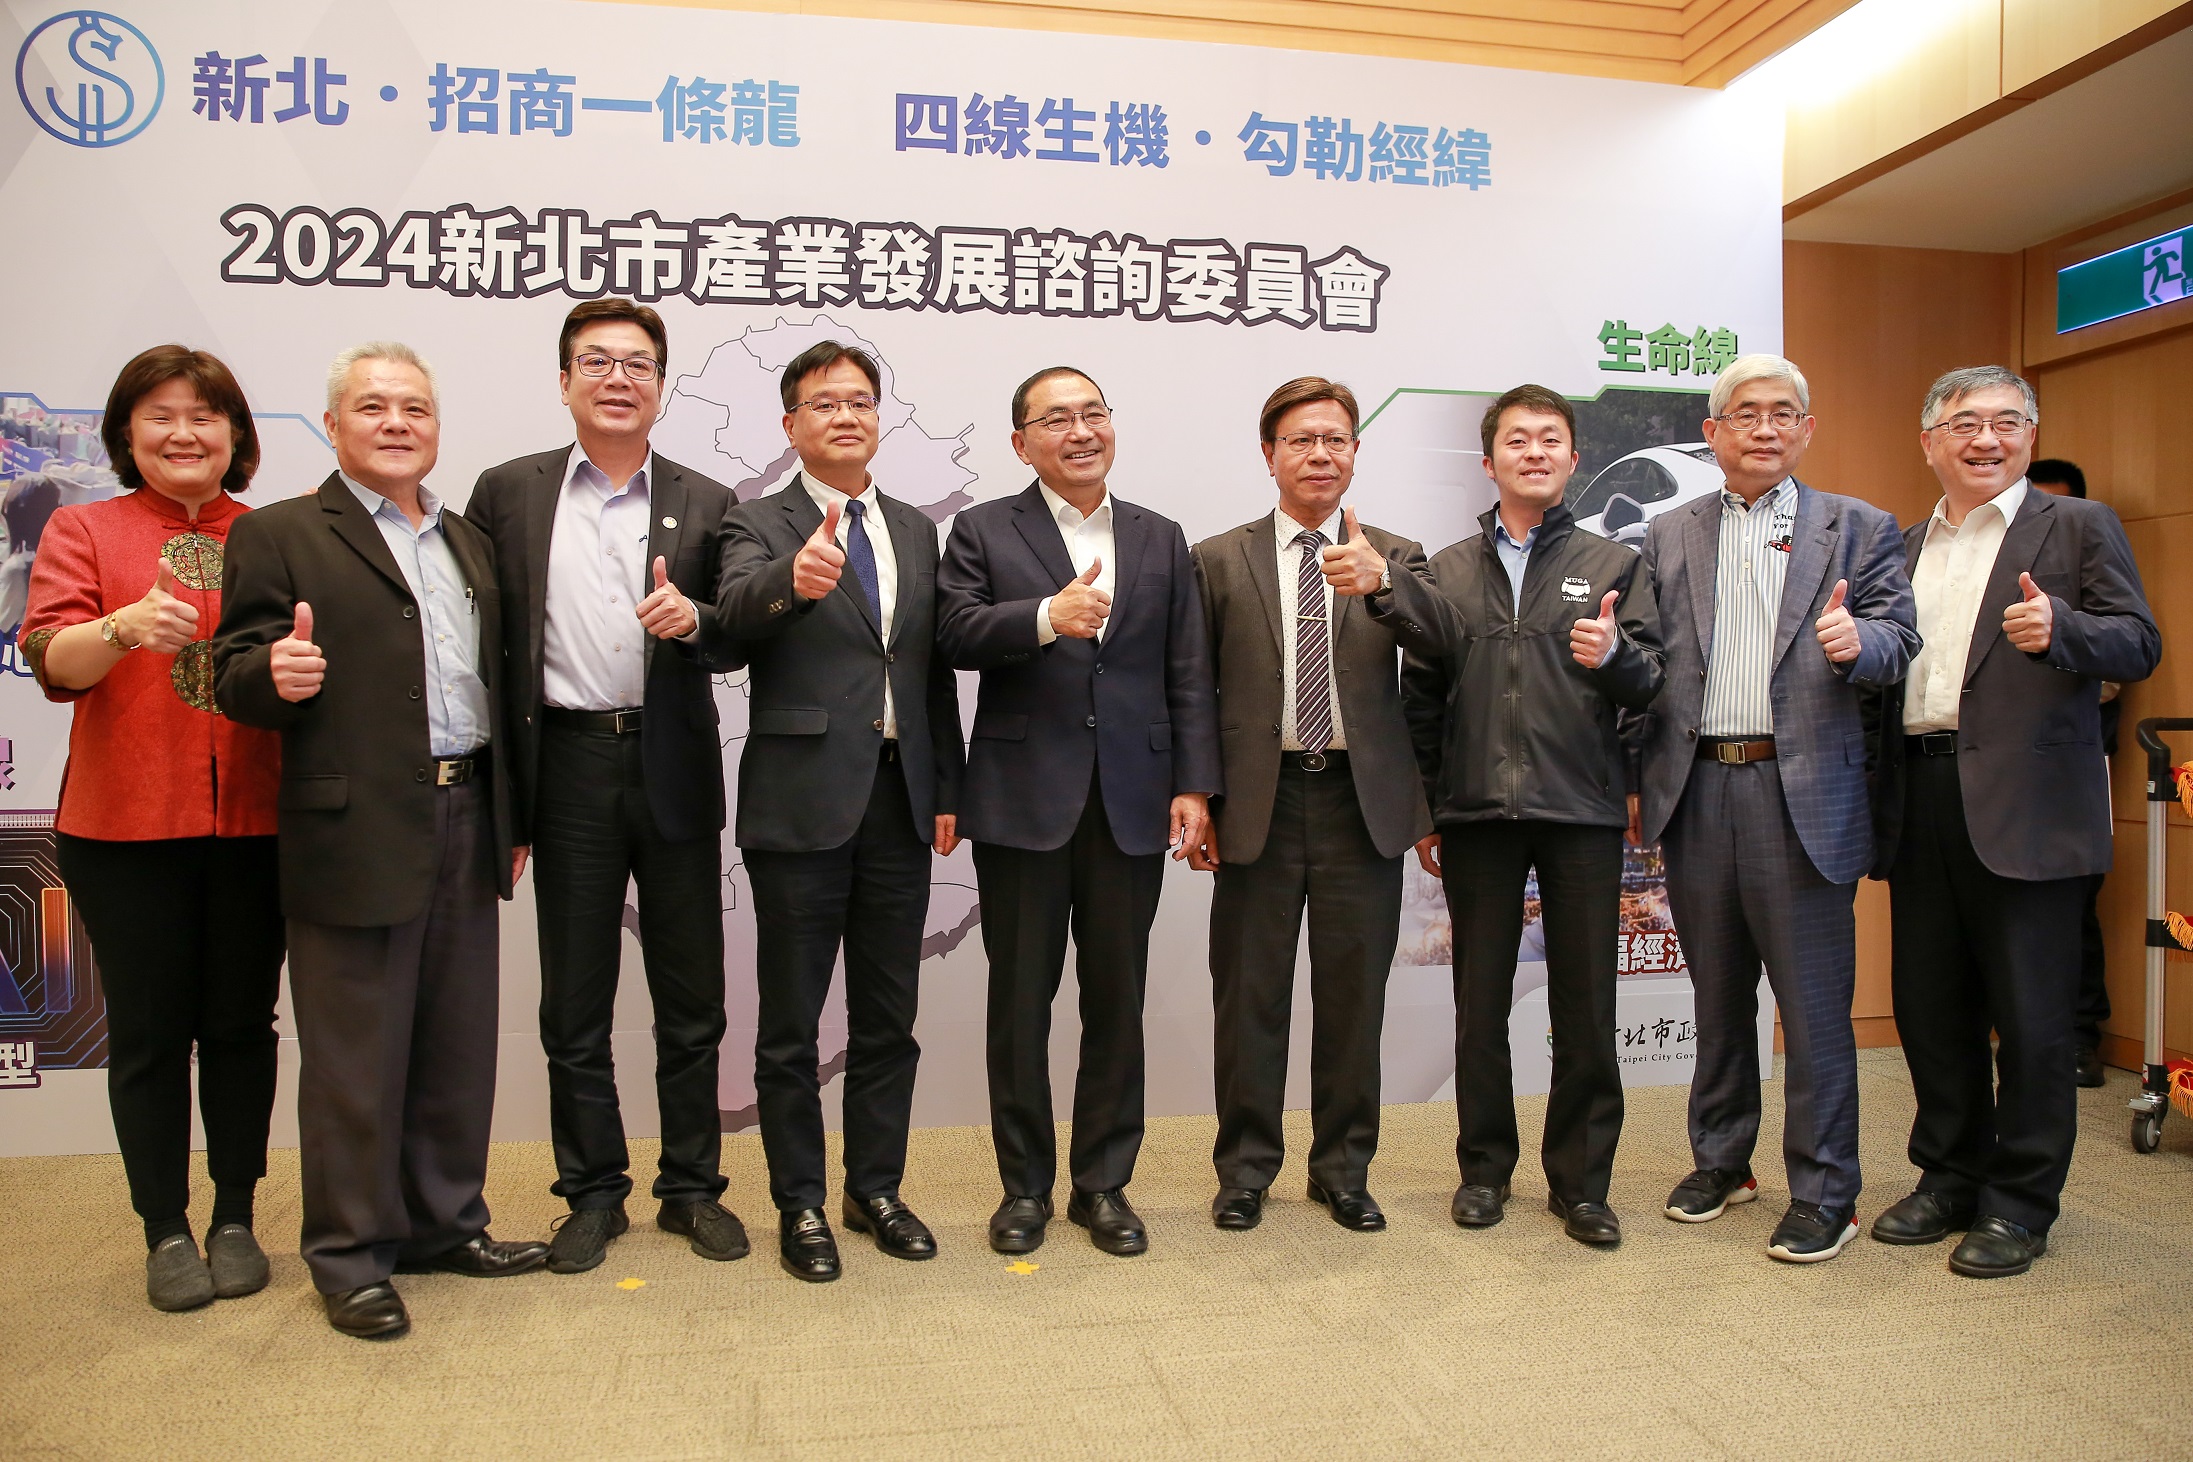 新北市長侯友宜(右5)及副市長劉和然(左3)與工商領袖代表合影。